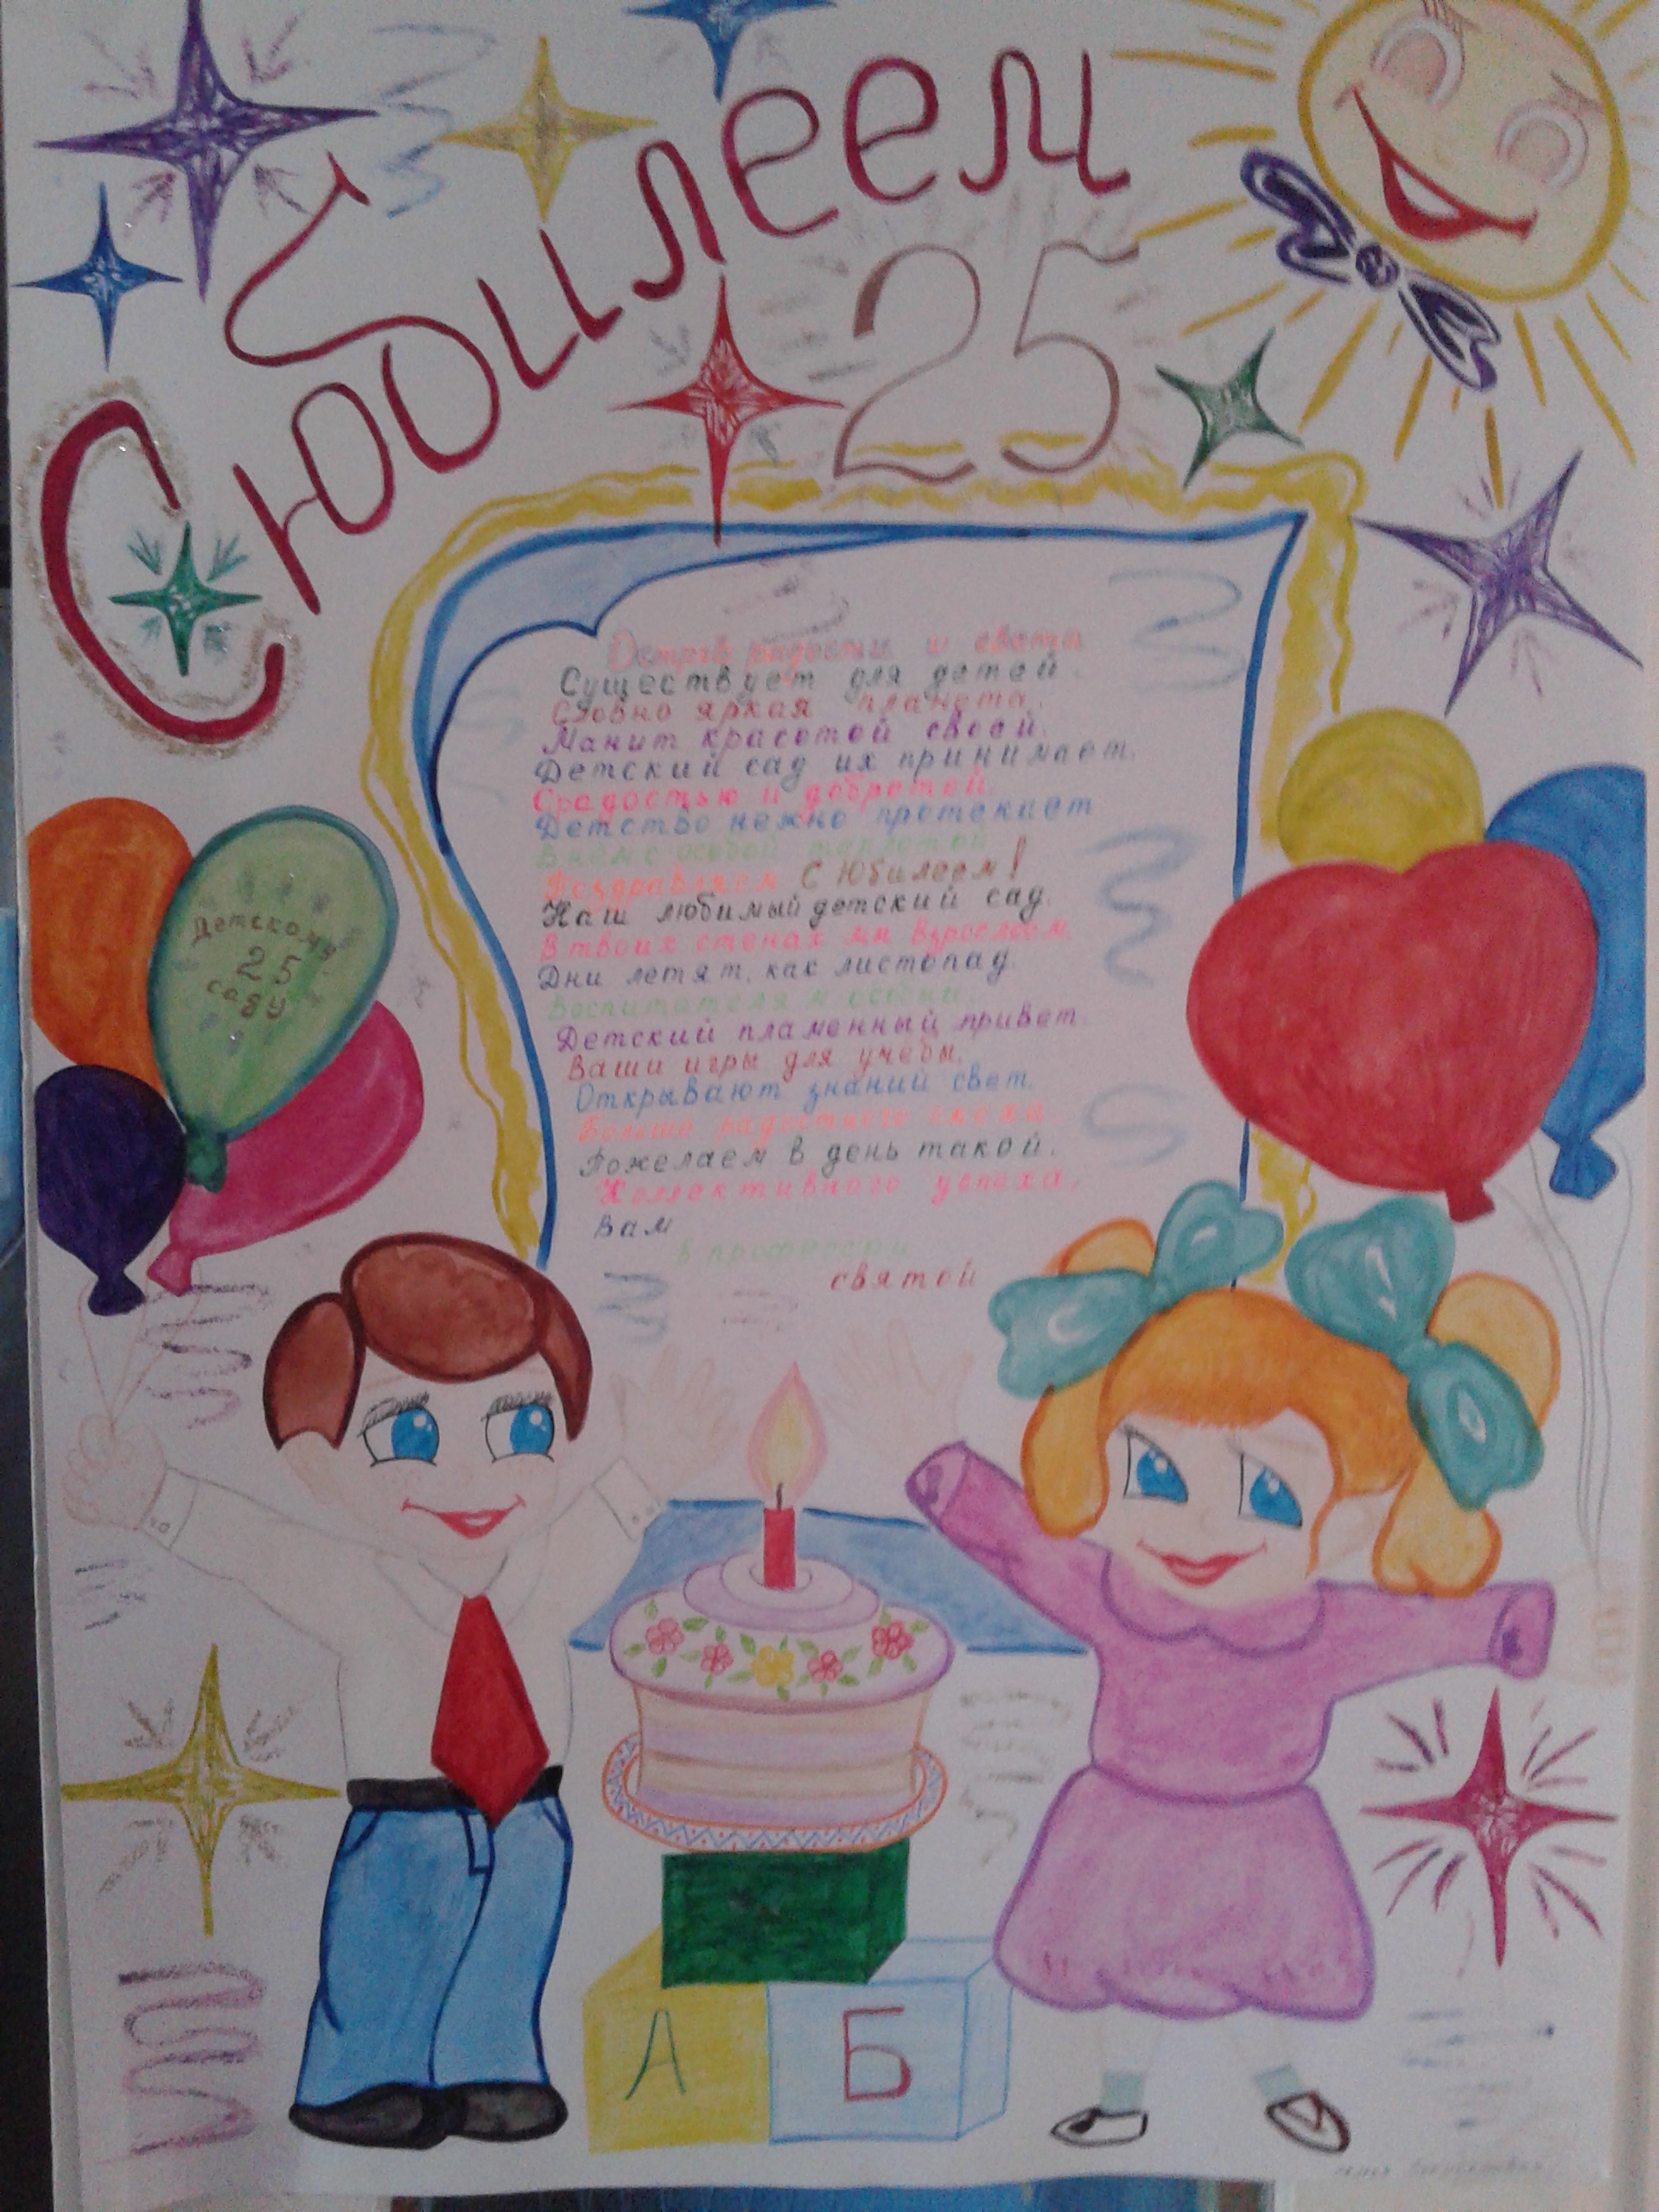 Плакат с днем рождения детский сад